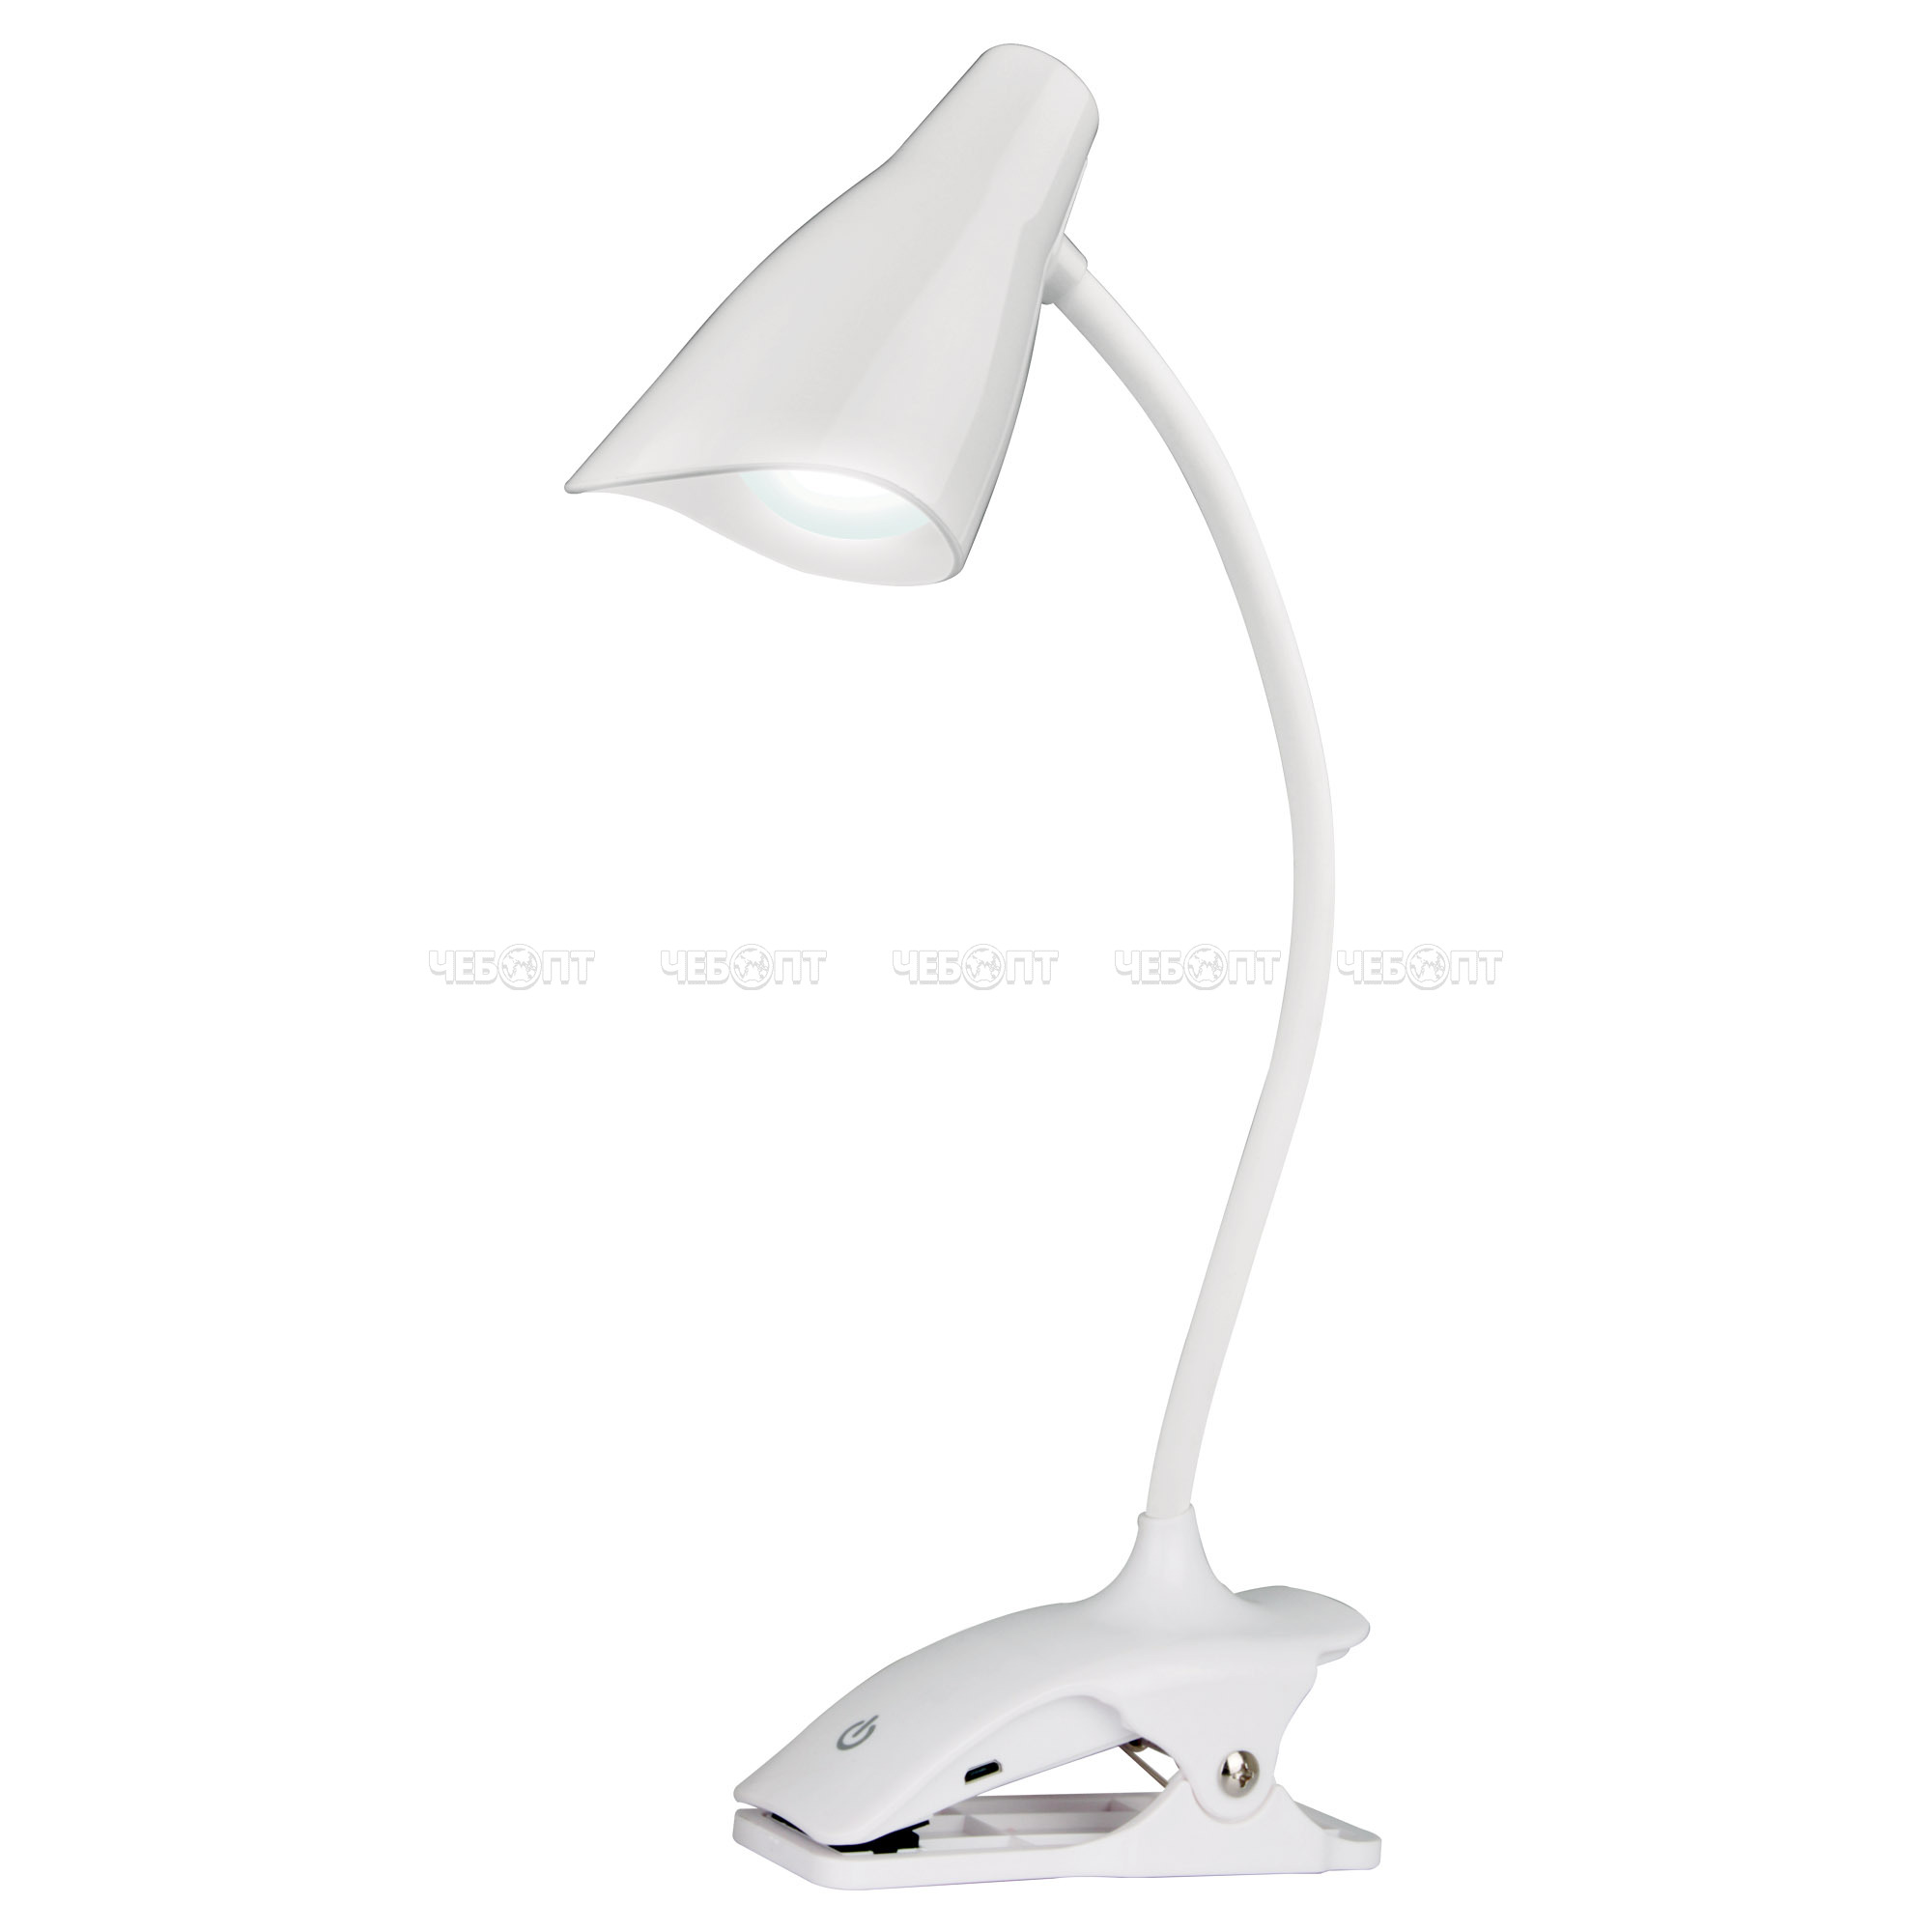 Лампа настольная TLD-560 White 30 Вт, на прищепке, сенсорный с диммером, светодиодная [40] UNIEL. ЧЕБОПТ.